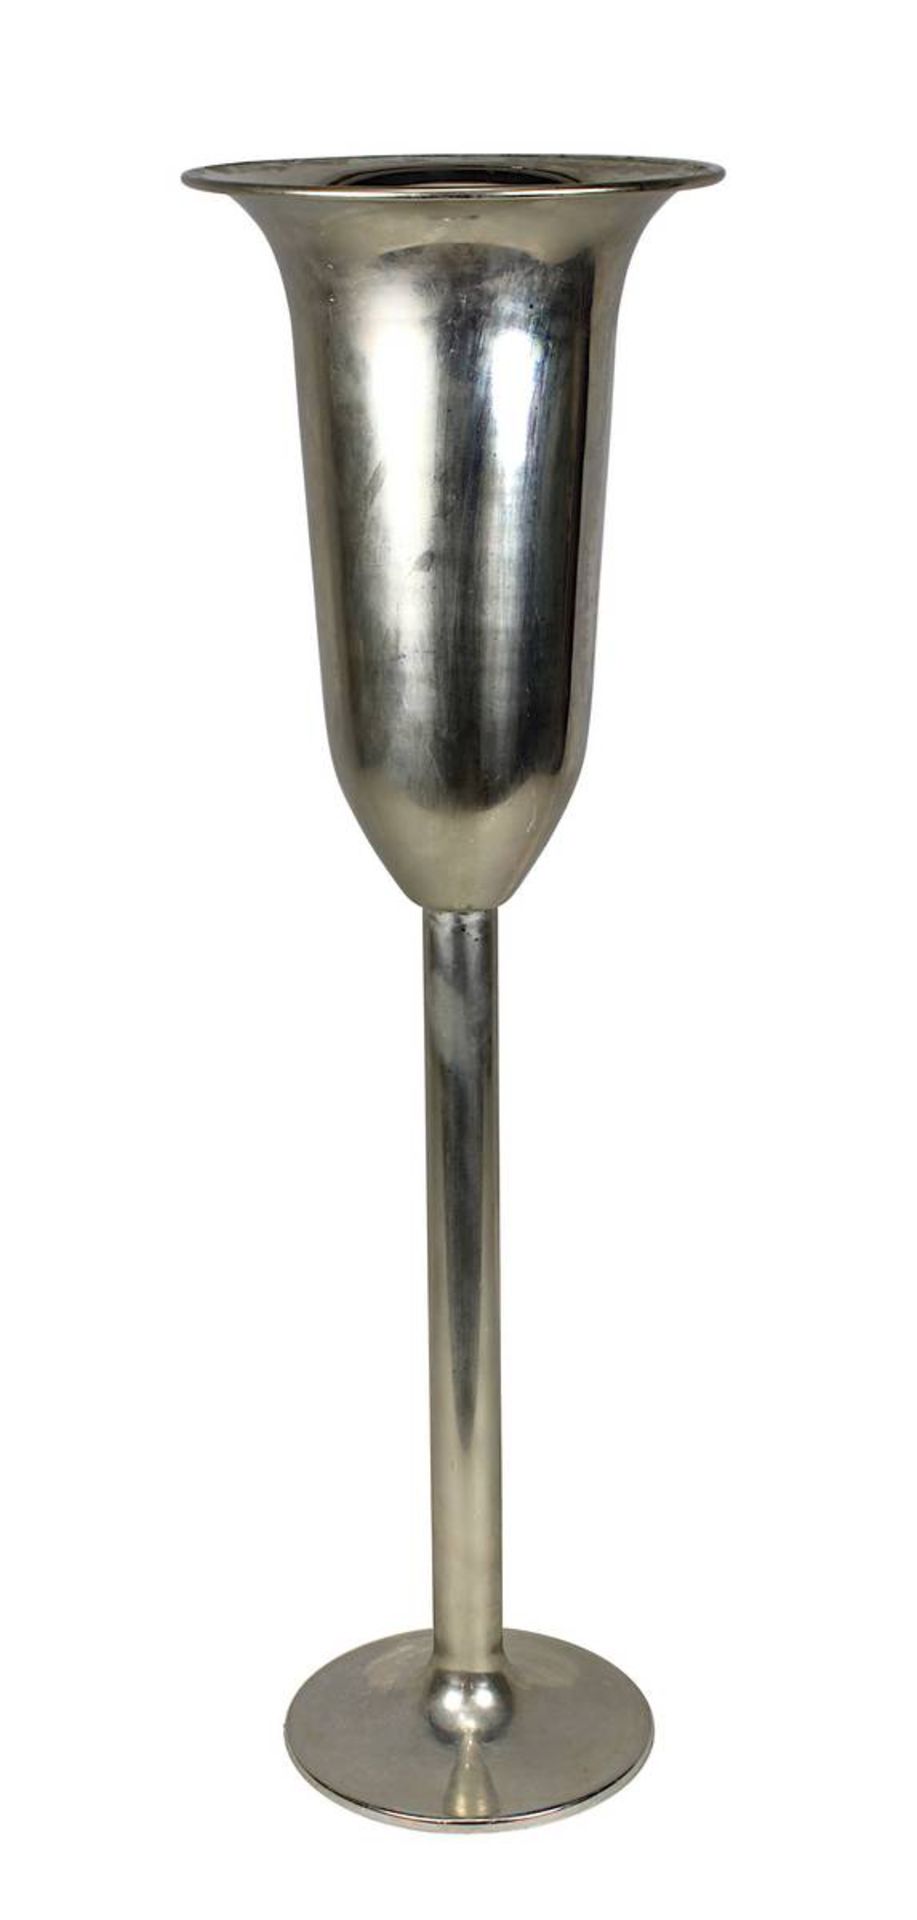 Stand-Sektkühler, vernickeltes Metall, 2. H. 20. Jh., H 82,5 cm, D 25,5 cm. 2497-005